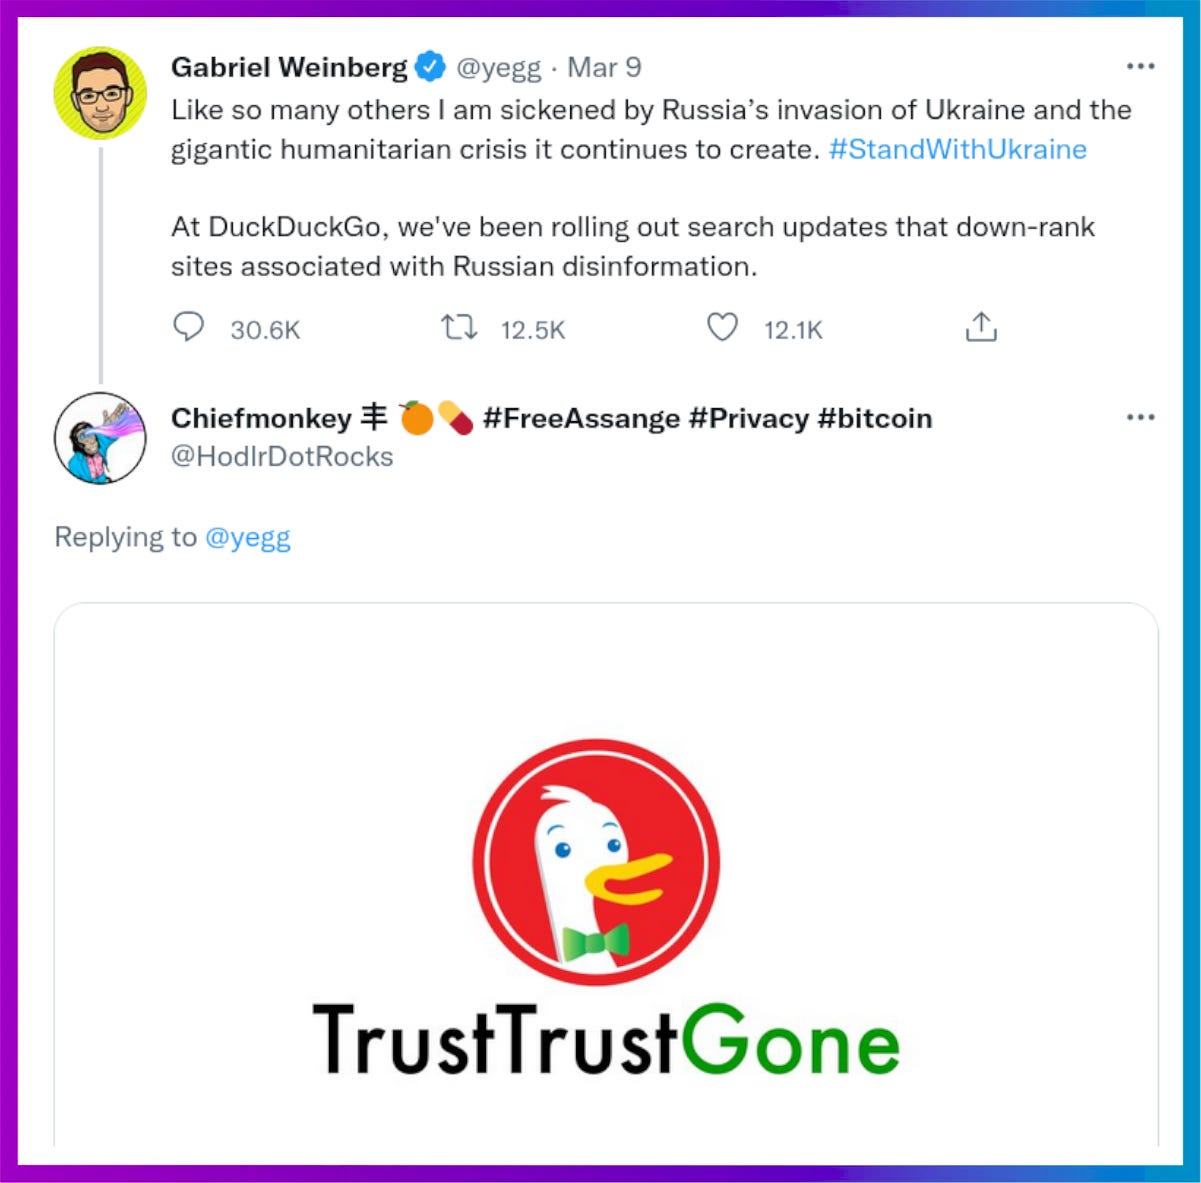 Response on Twitter to DuckDuckGo CEO Gabriel Weinberg’s tweet.